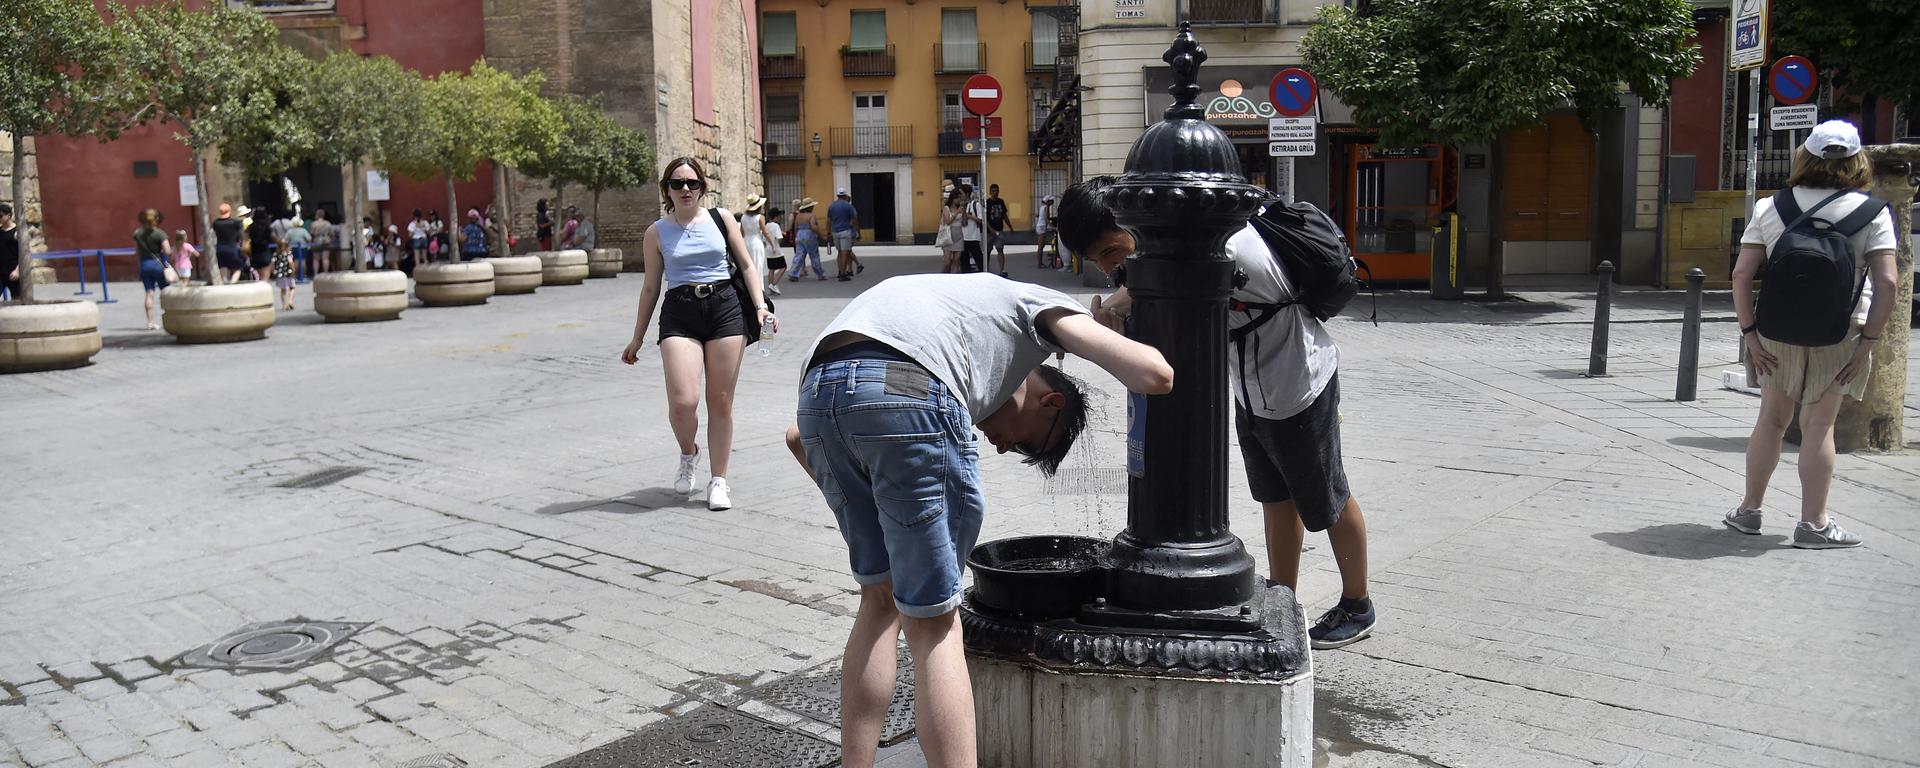 Las temperaturas máximas que está dejando la letal ola de calor en Europa